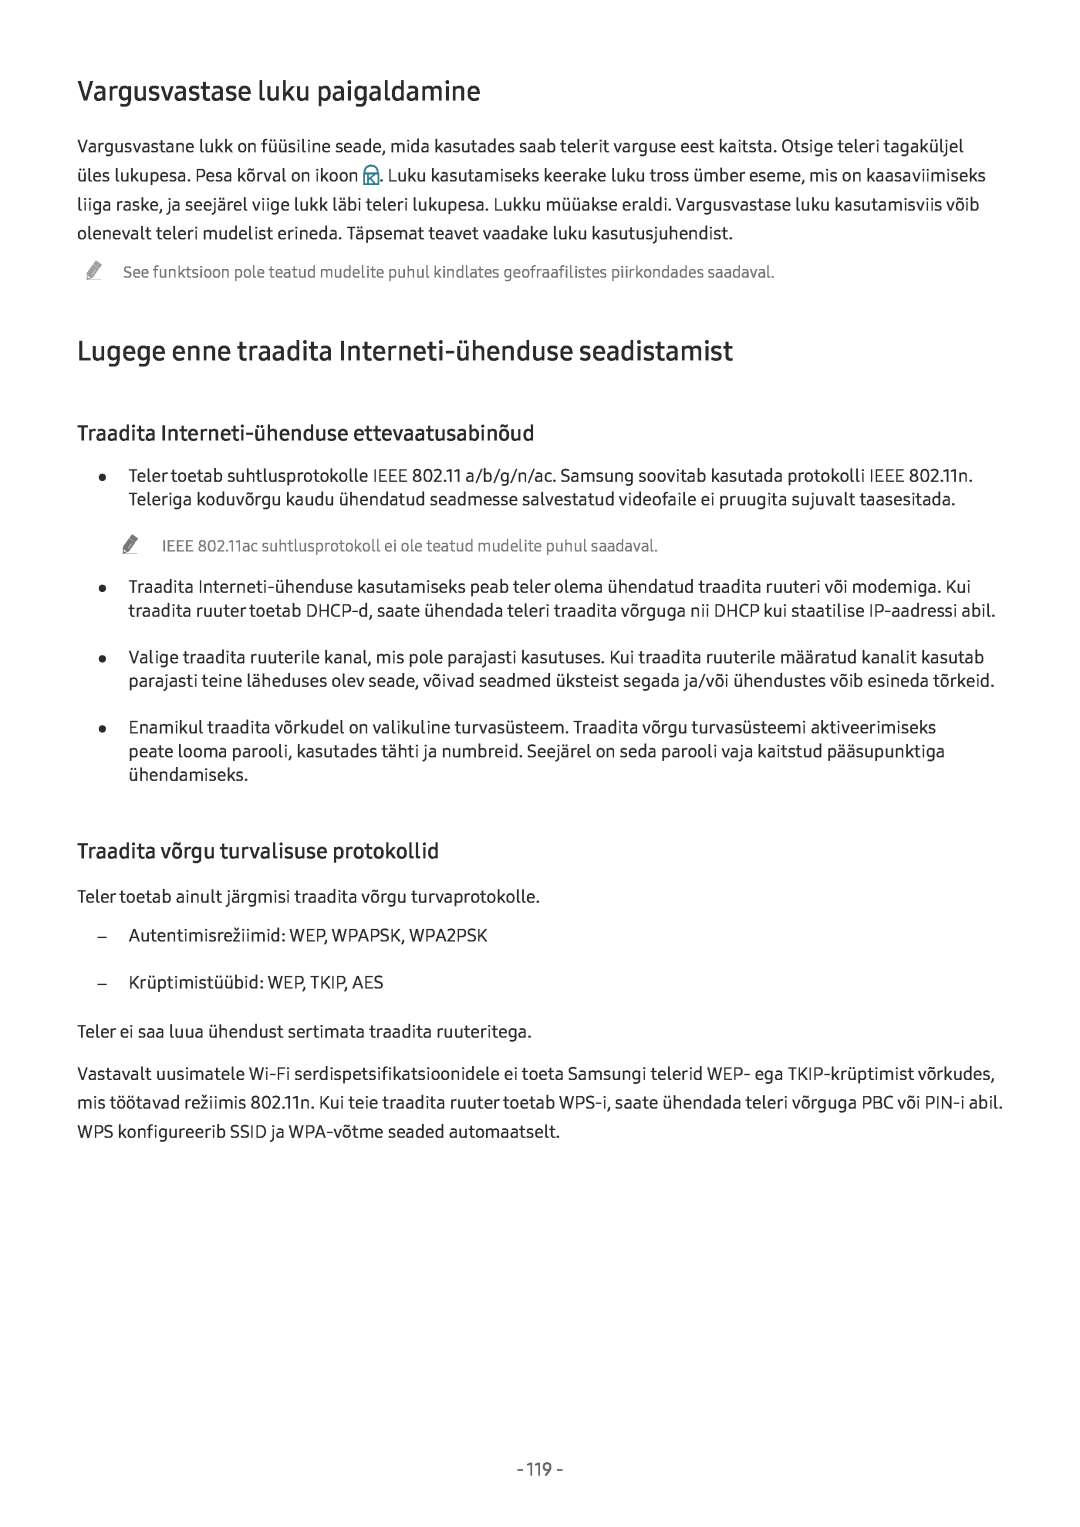 Samsung UE75MU8002TXXH manual Vargusvastase luku paigaldamine, Lugege enne traadita Interneti-ühenduse seadistamist 